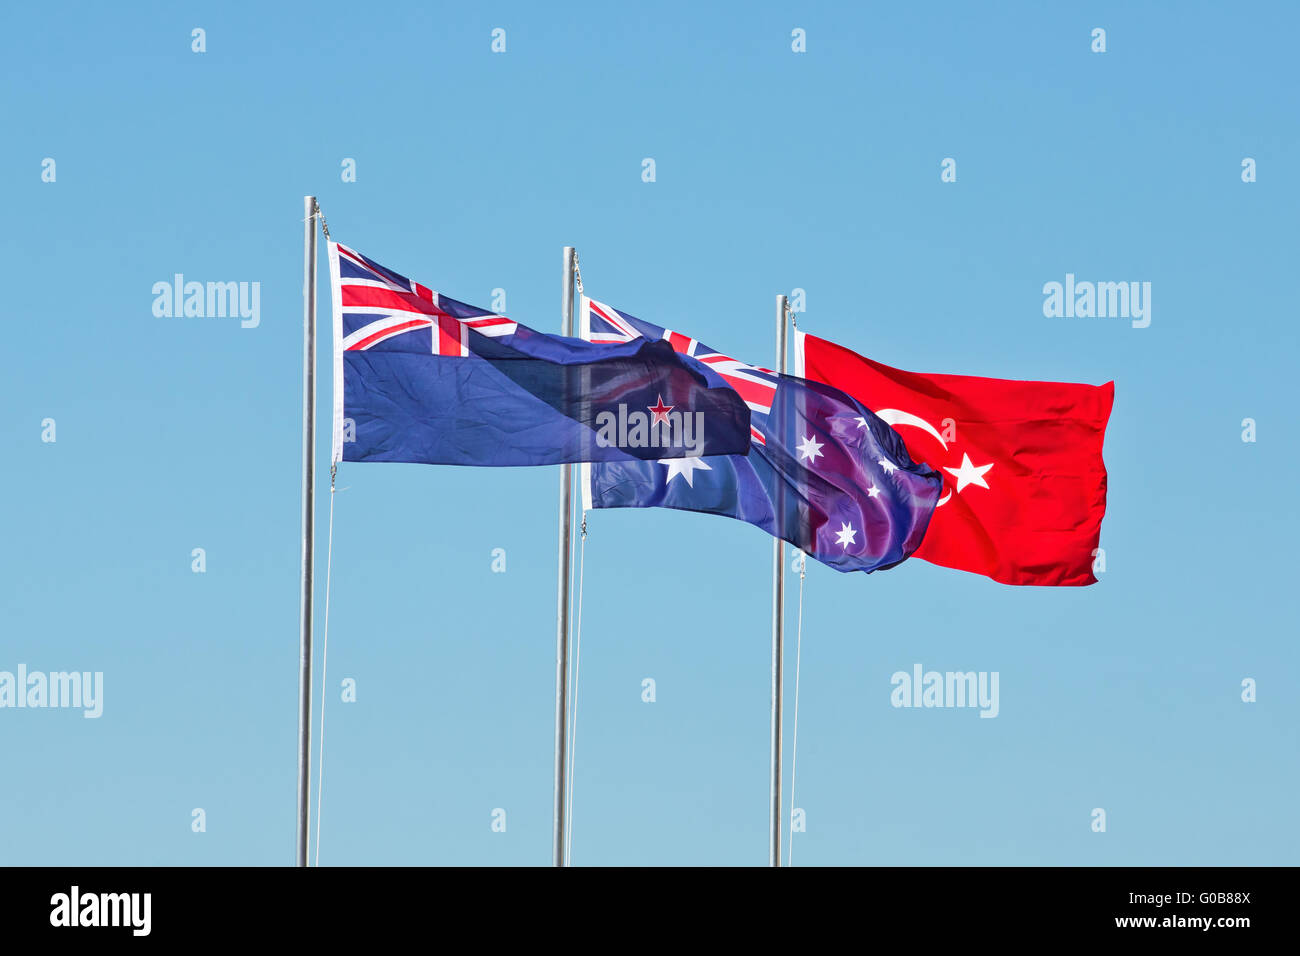 Bandiere di Nuova Zelanda, Australia e Turchia, battenti per commemorare l'Anzac sbarchi a Gallipoli in WW1. Foto Stock